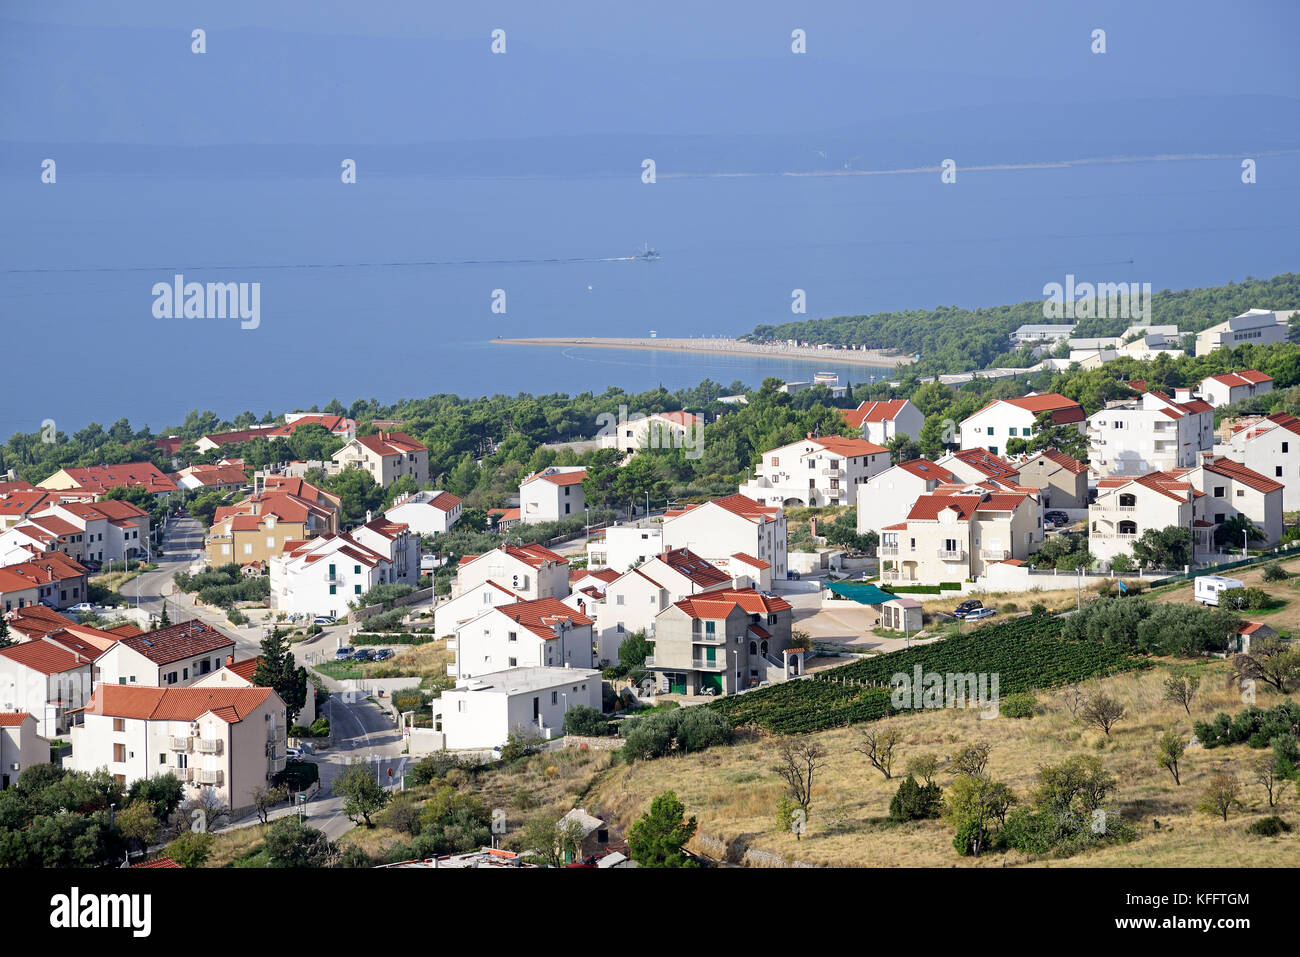 Village bol sur l'île de Brac, mer Adriatique, mer méditerranée, île de Brac, Dalmatie, Croatie Banque D'Images